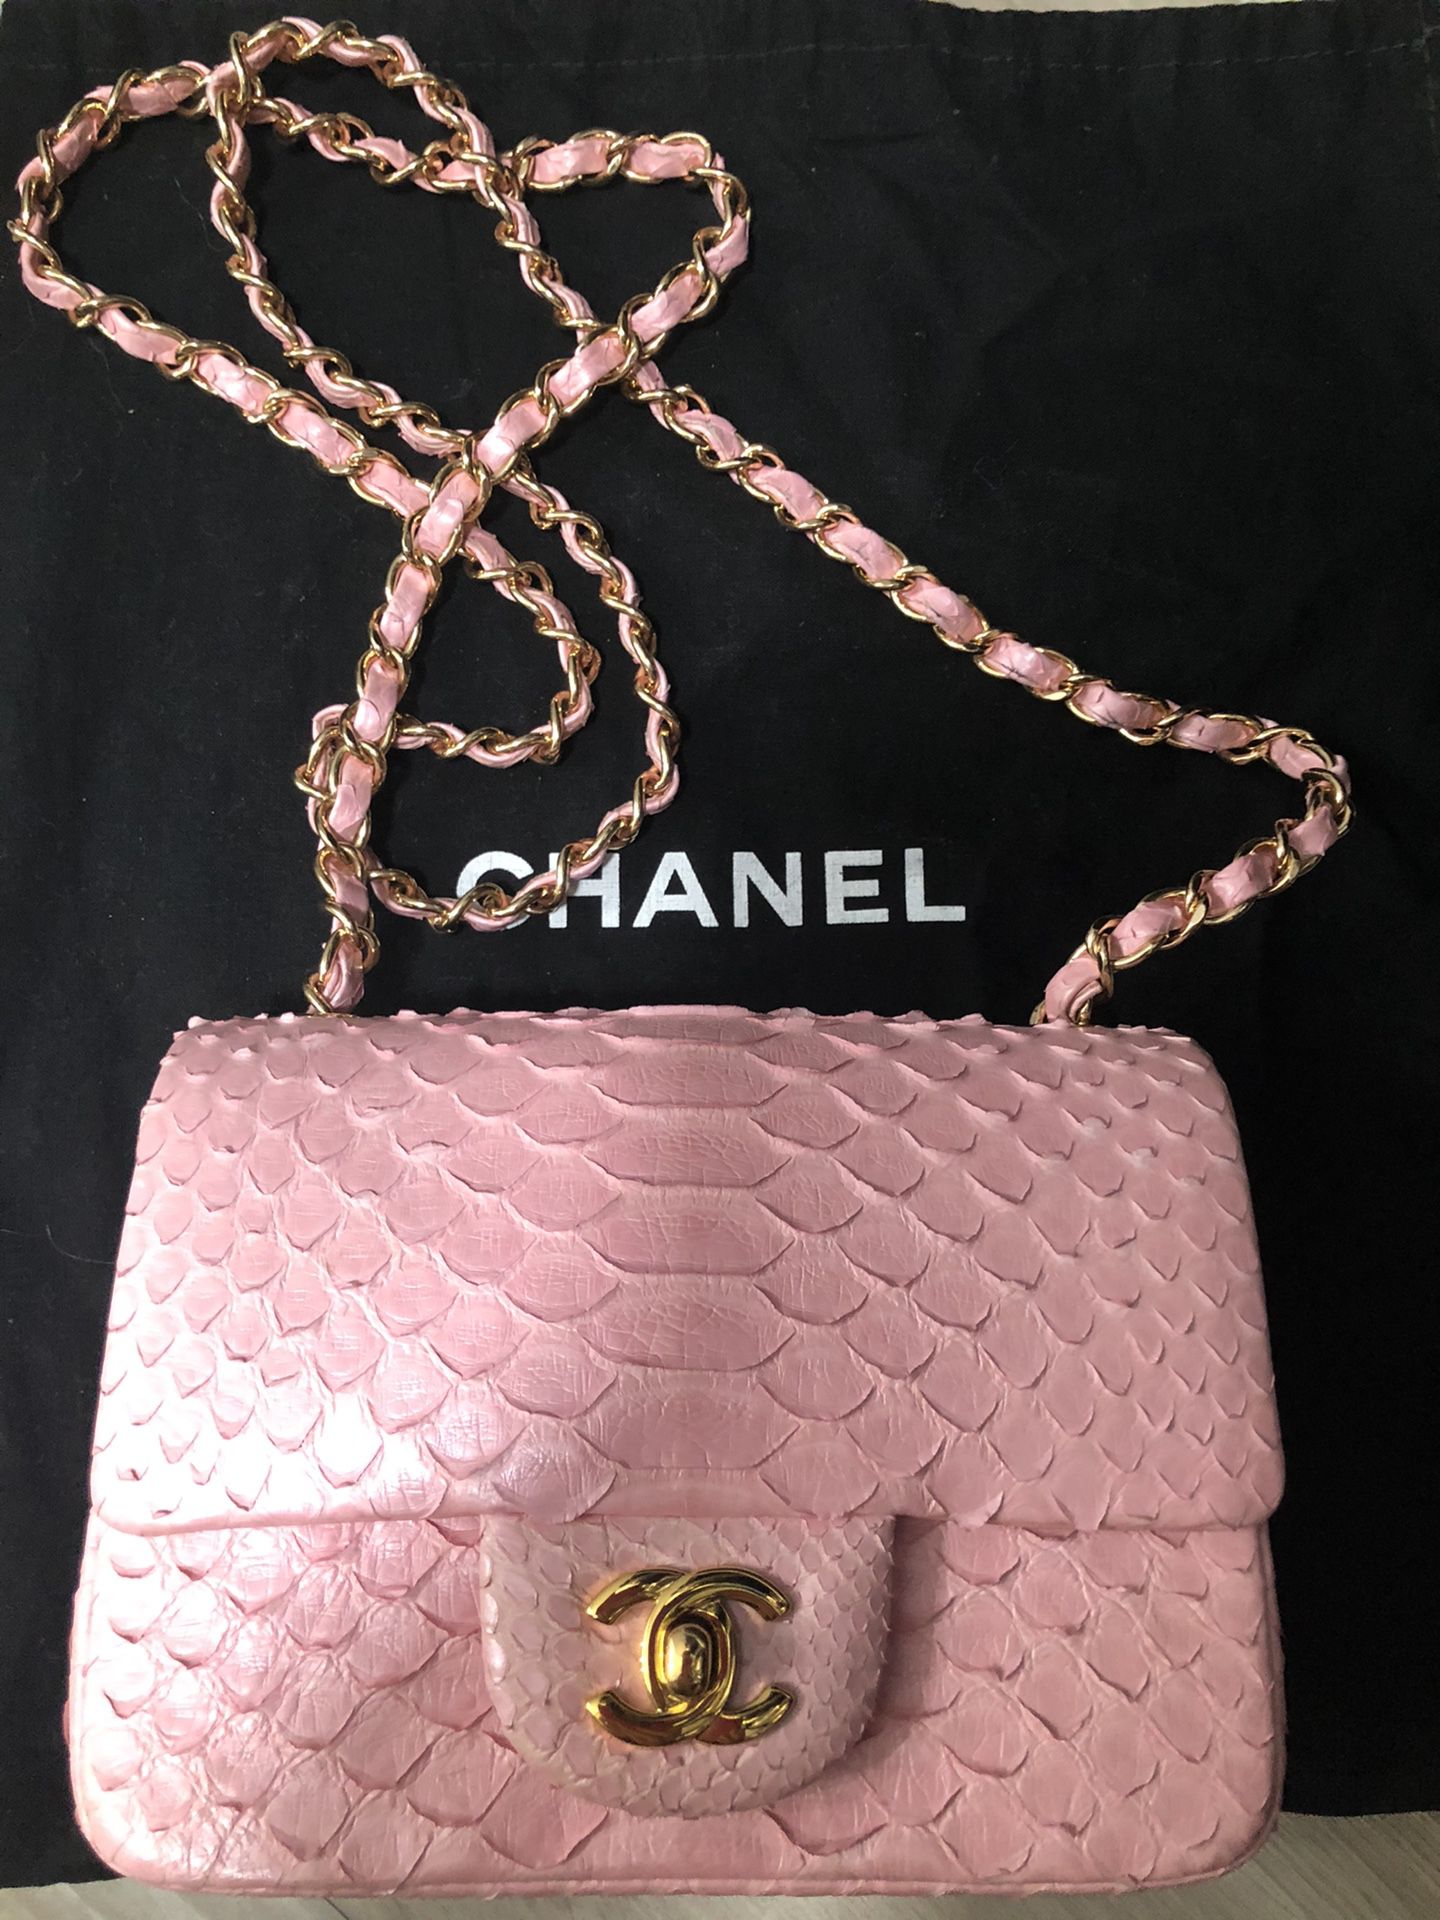 Chanel python bag